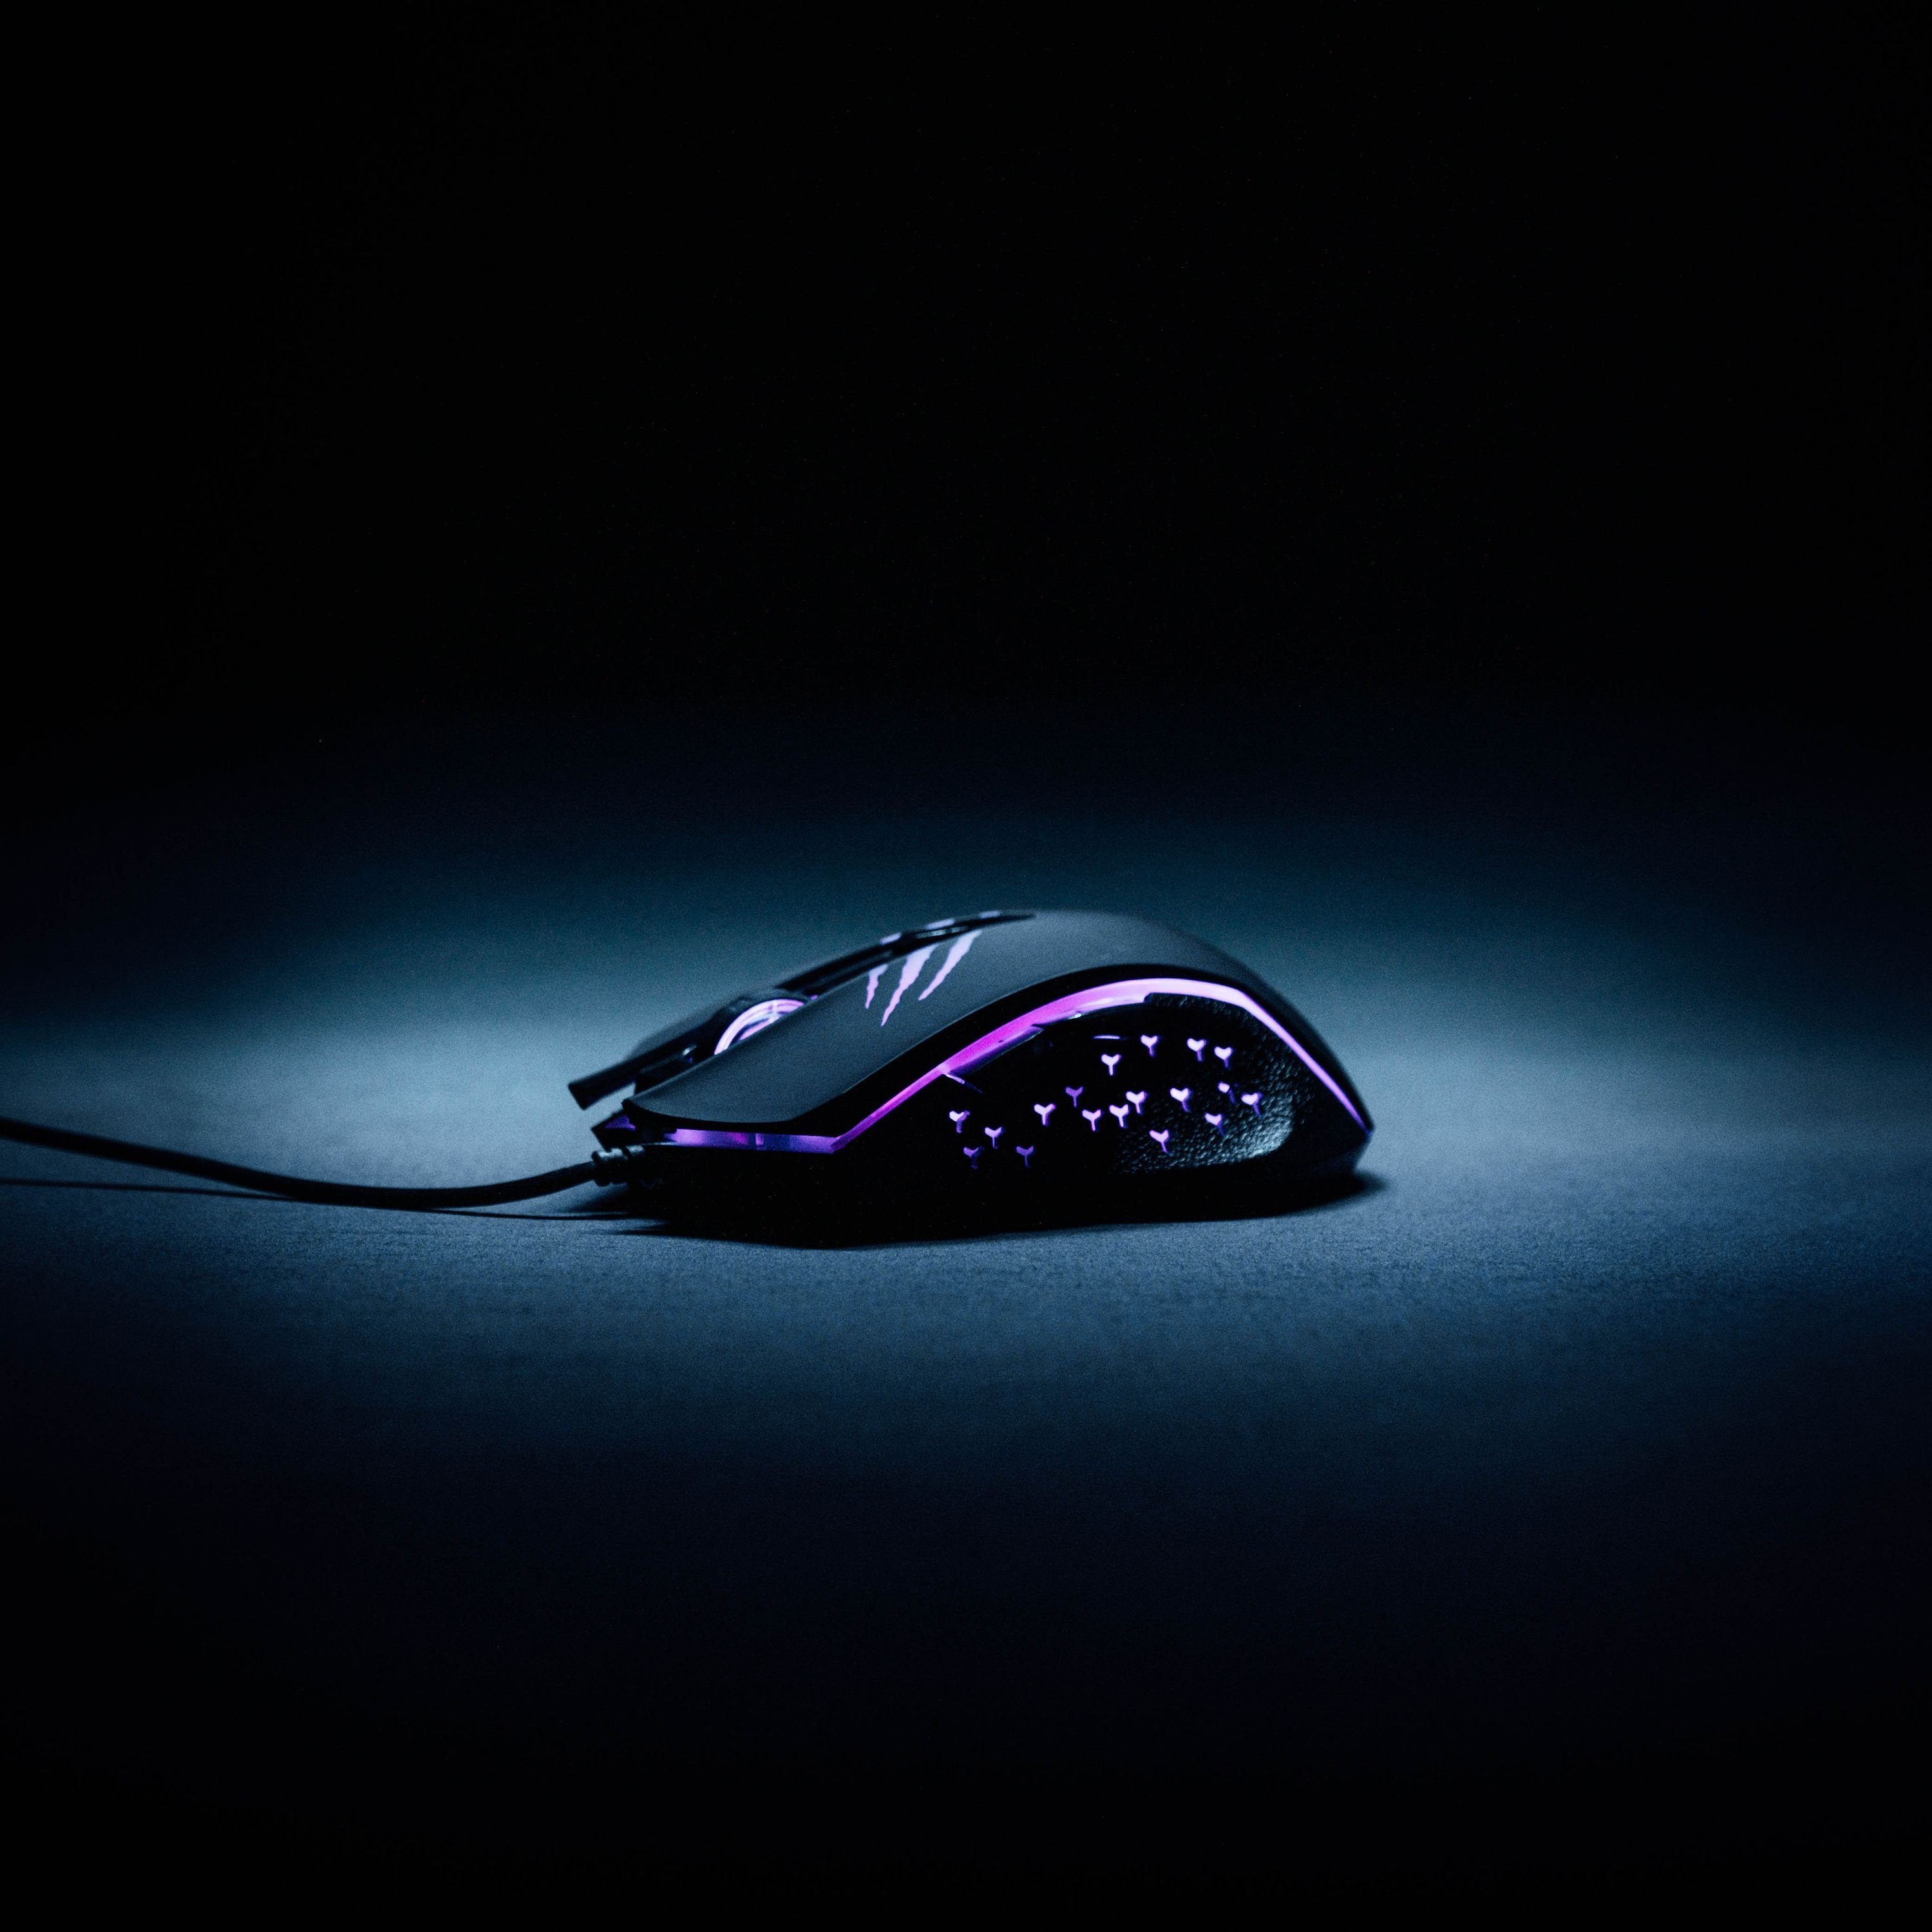 Schwaiger GM3000 Gaming-Maus (kabelgebunden, Hindergrundbeleuchtung) farbwechselnde